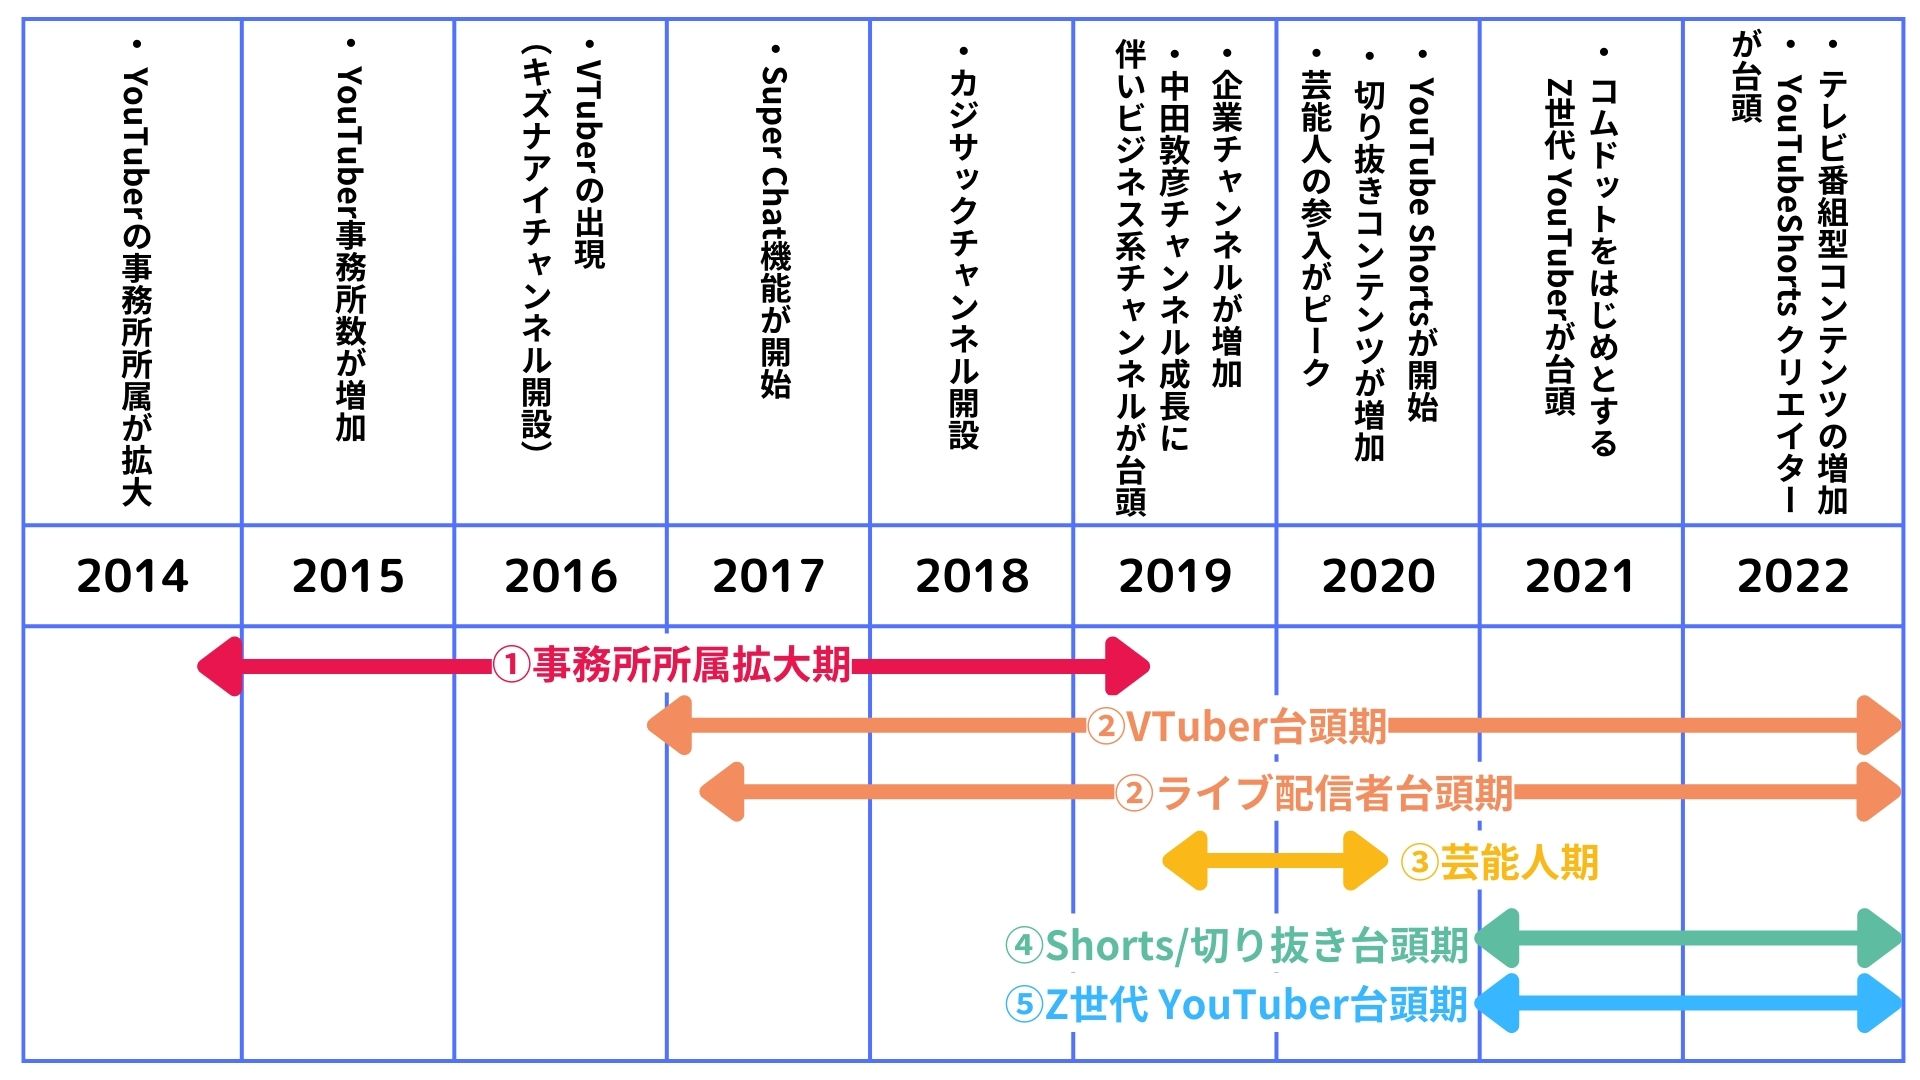 図5） YouTube市場の変遷の年表（2014-2022）